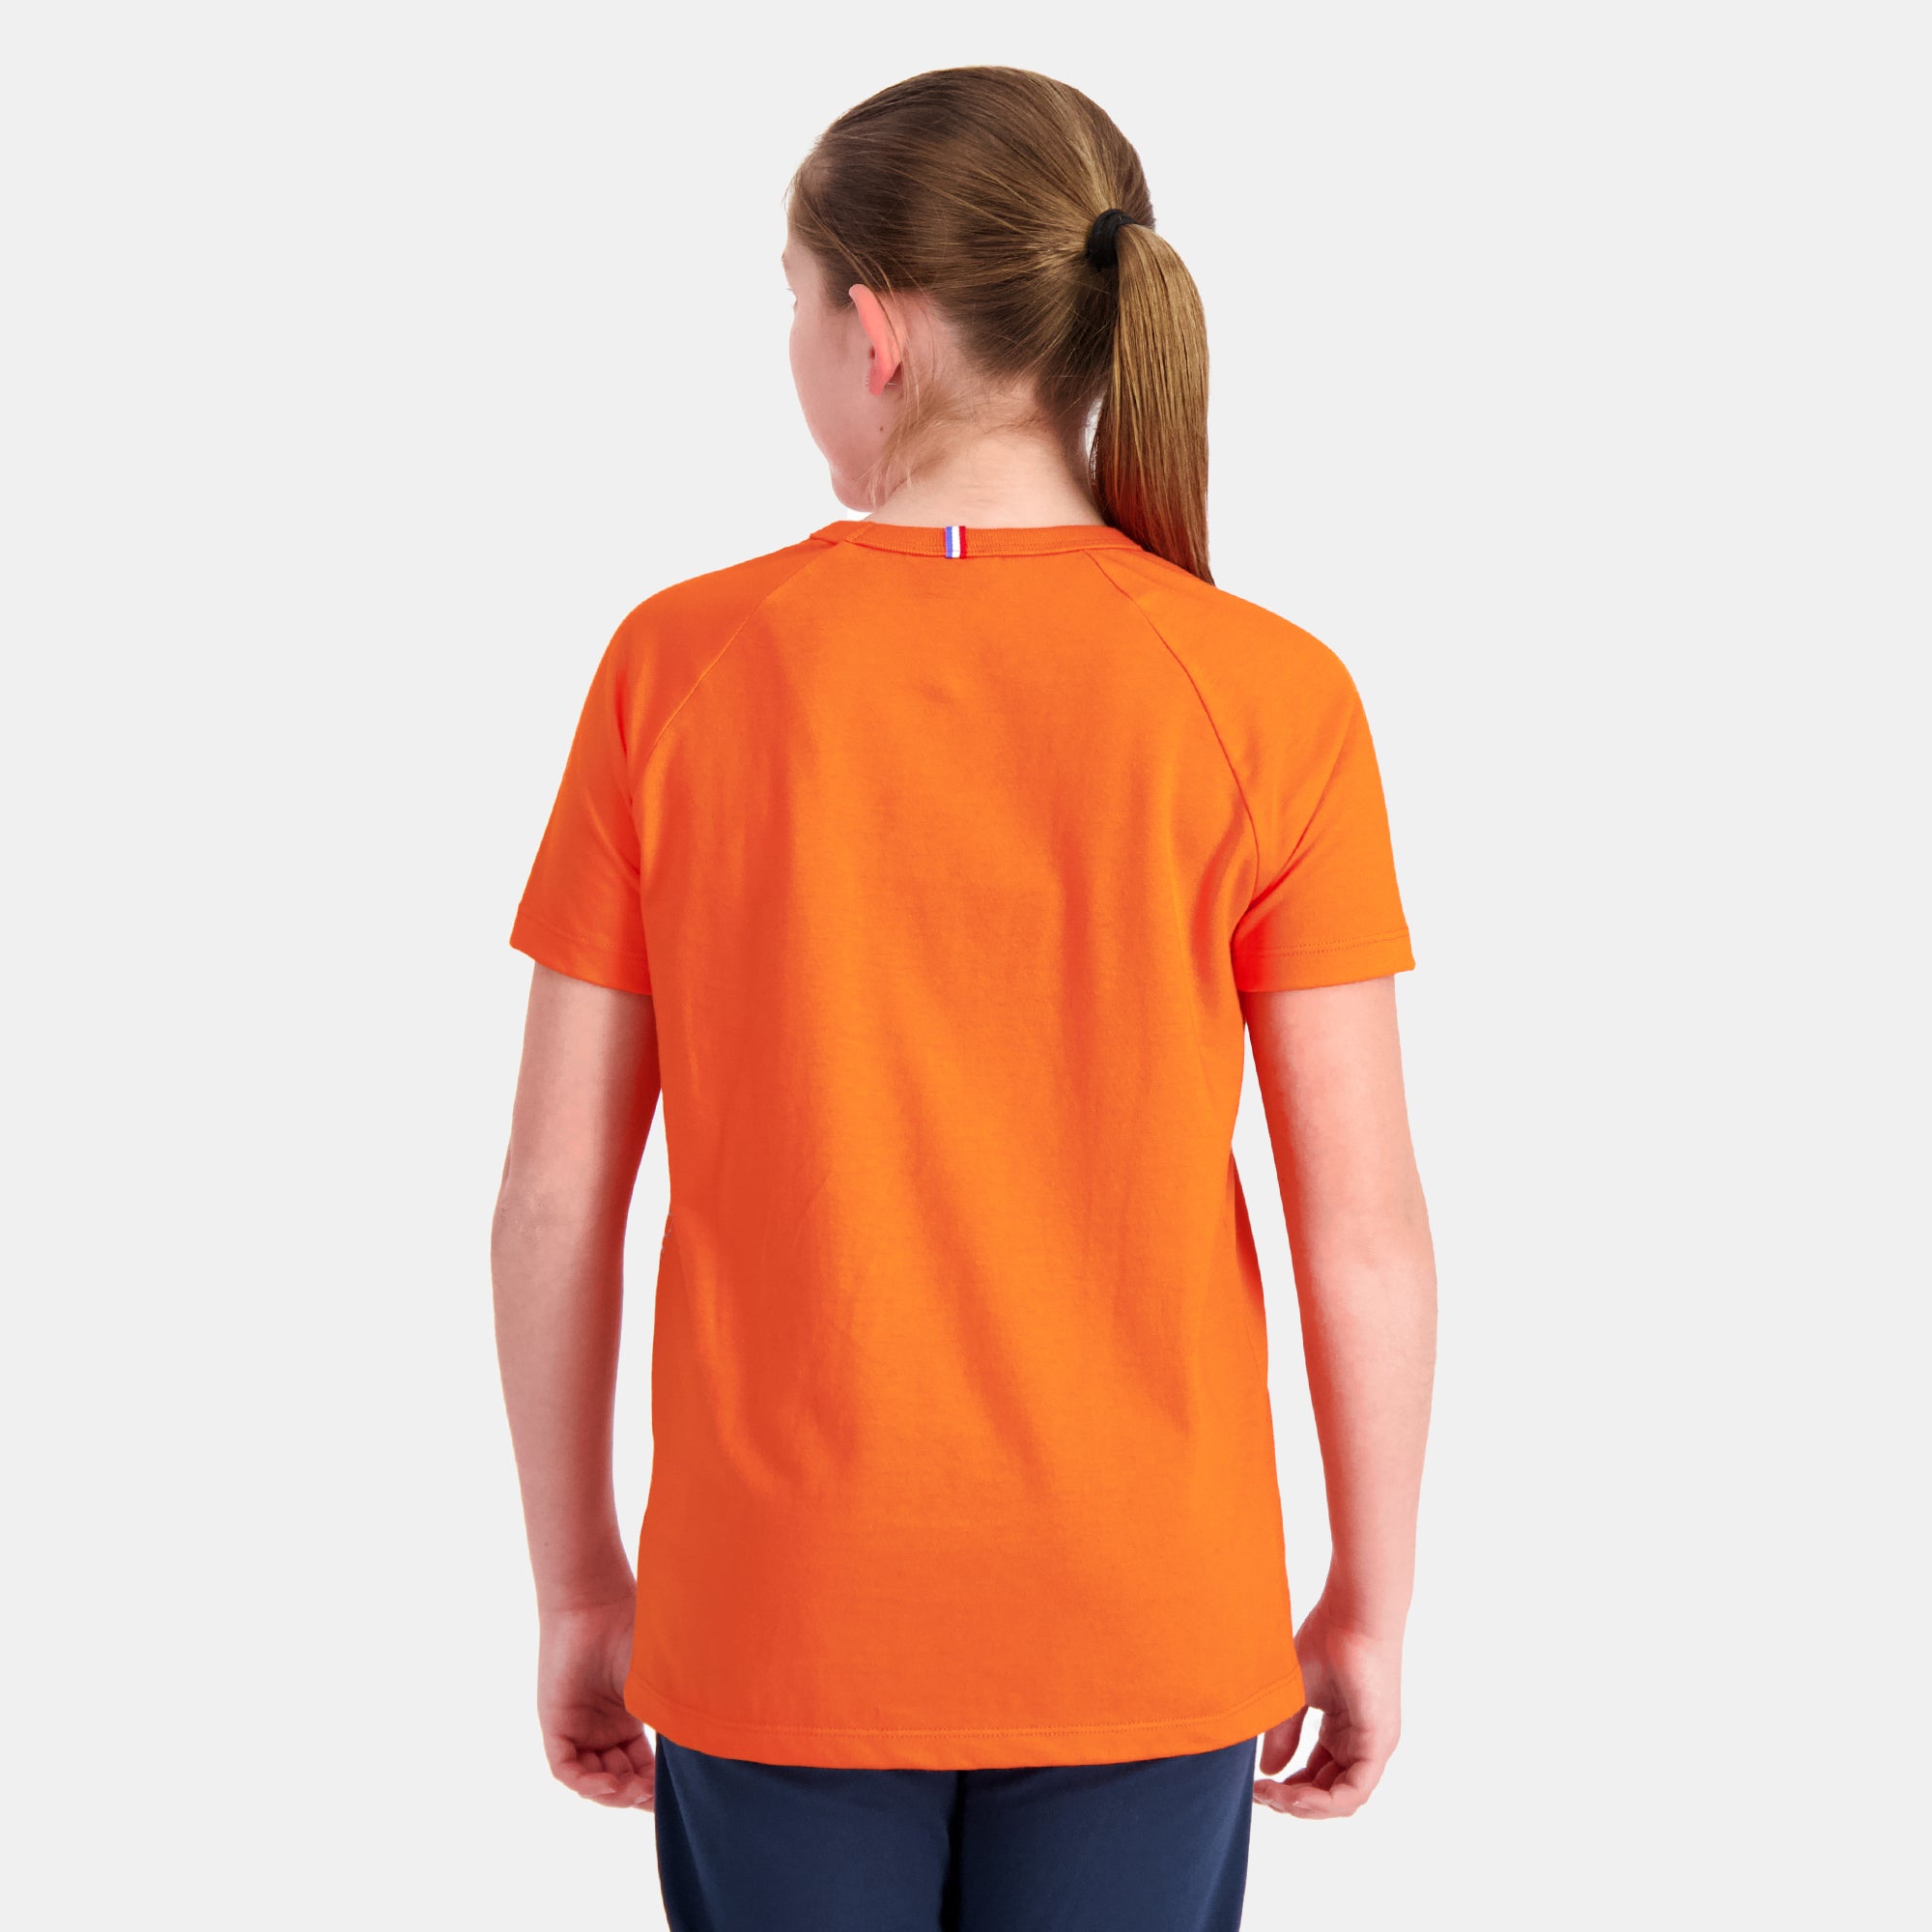 2410127-SAISON 2 Tee SS N°1 Enfant scarlet ibis  | Camiseta para Niño